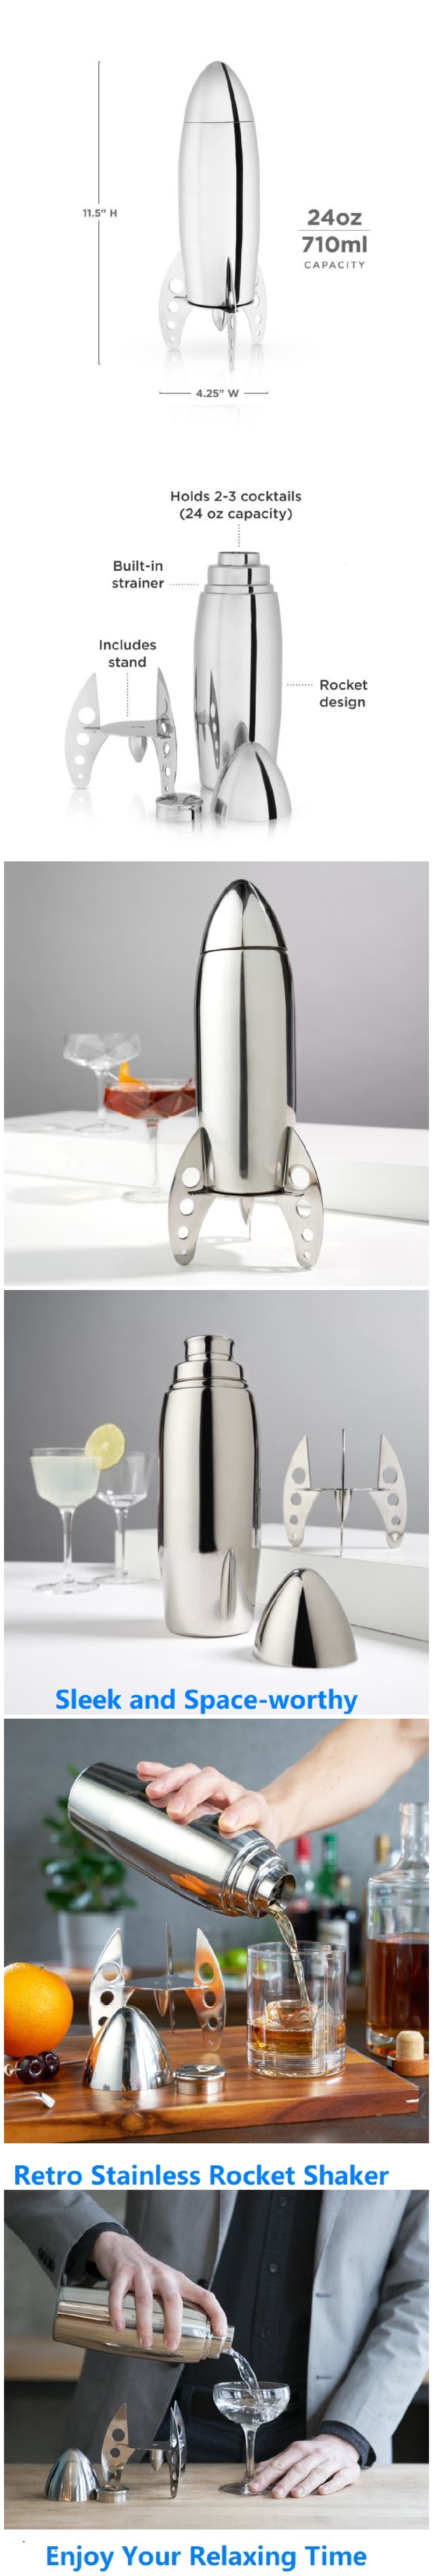 Rocket Cocktail Shaker